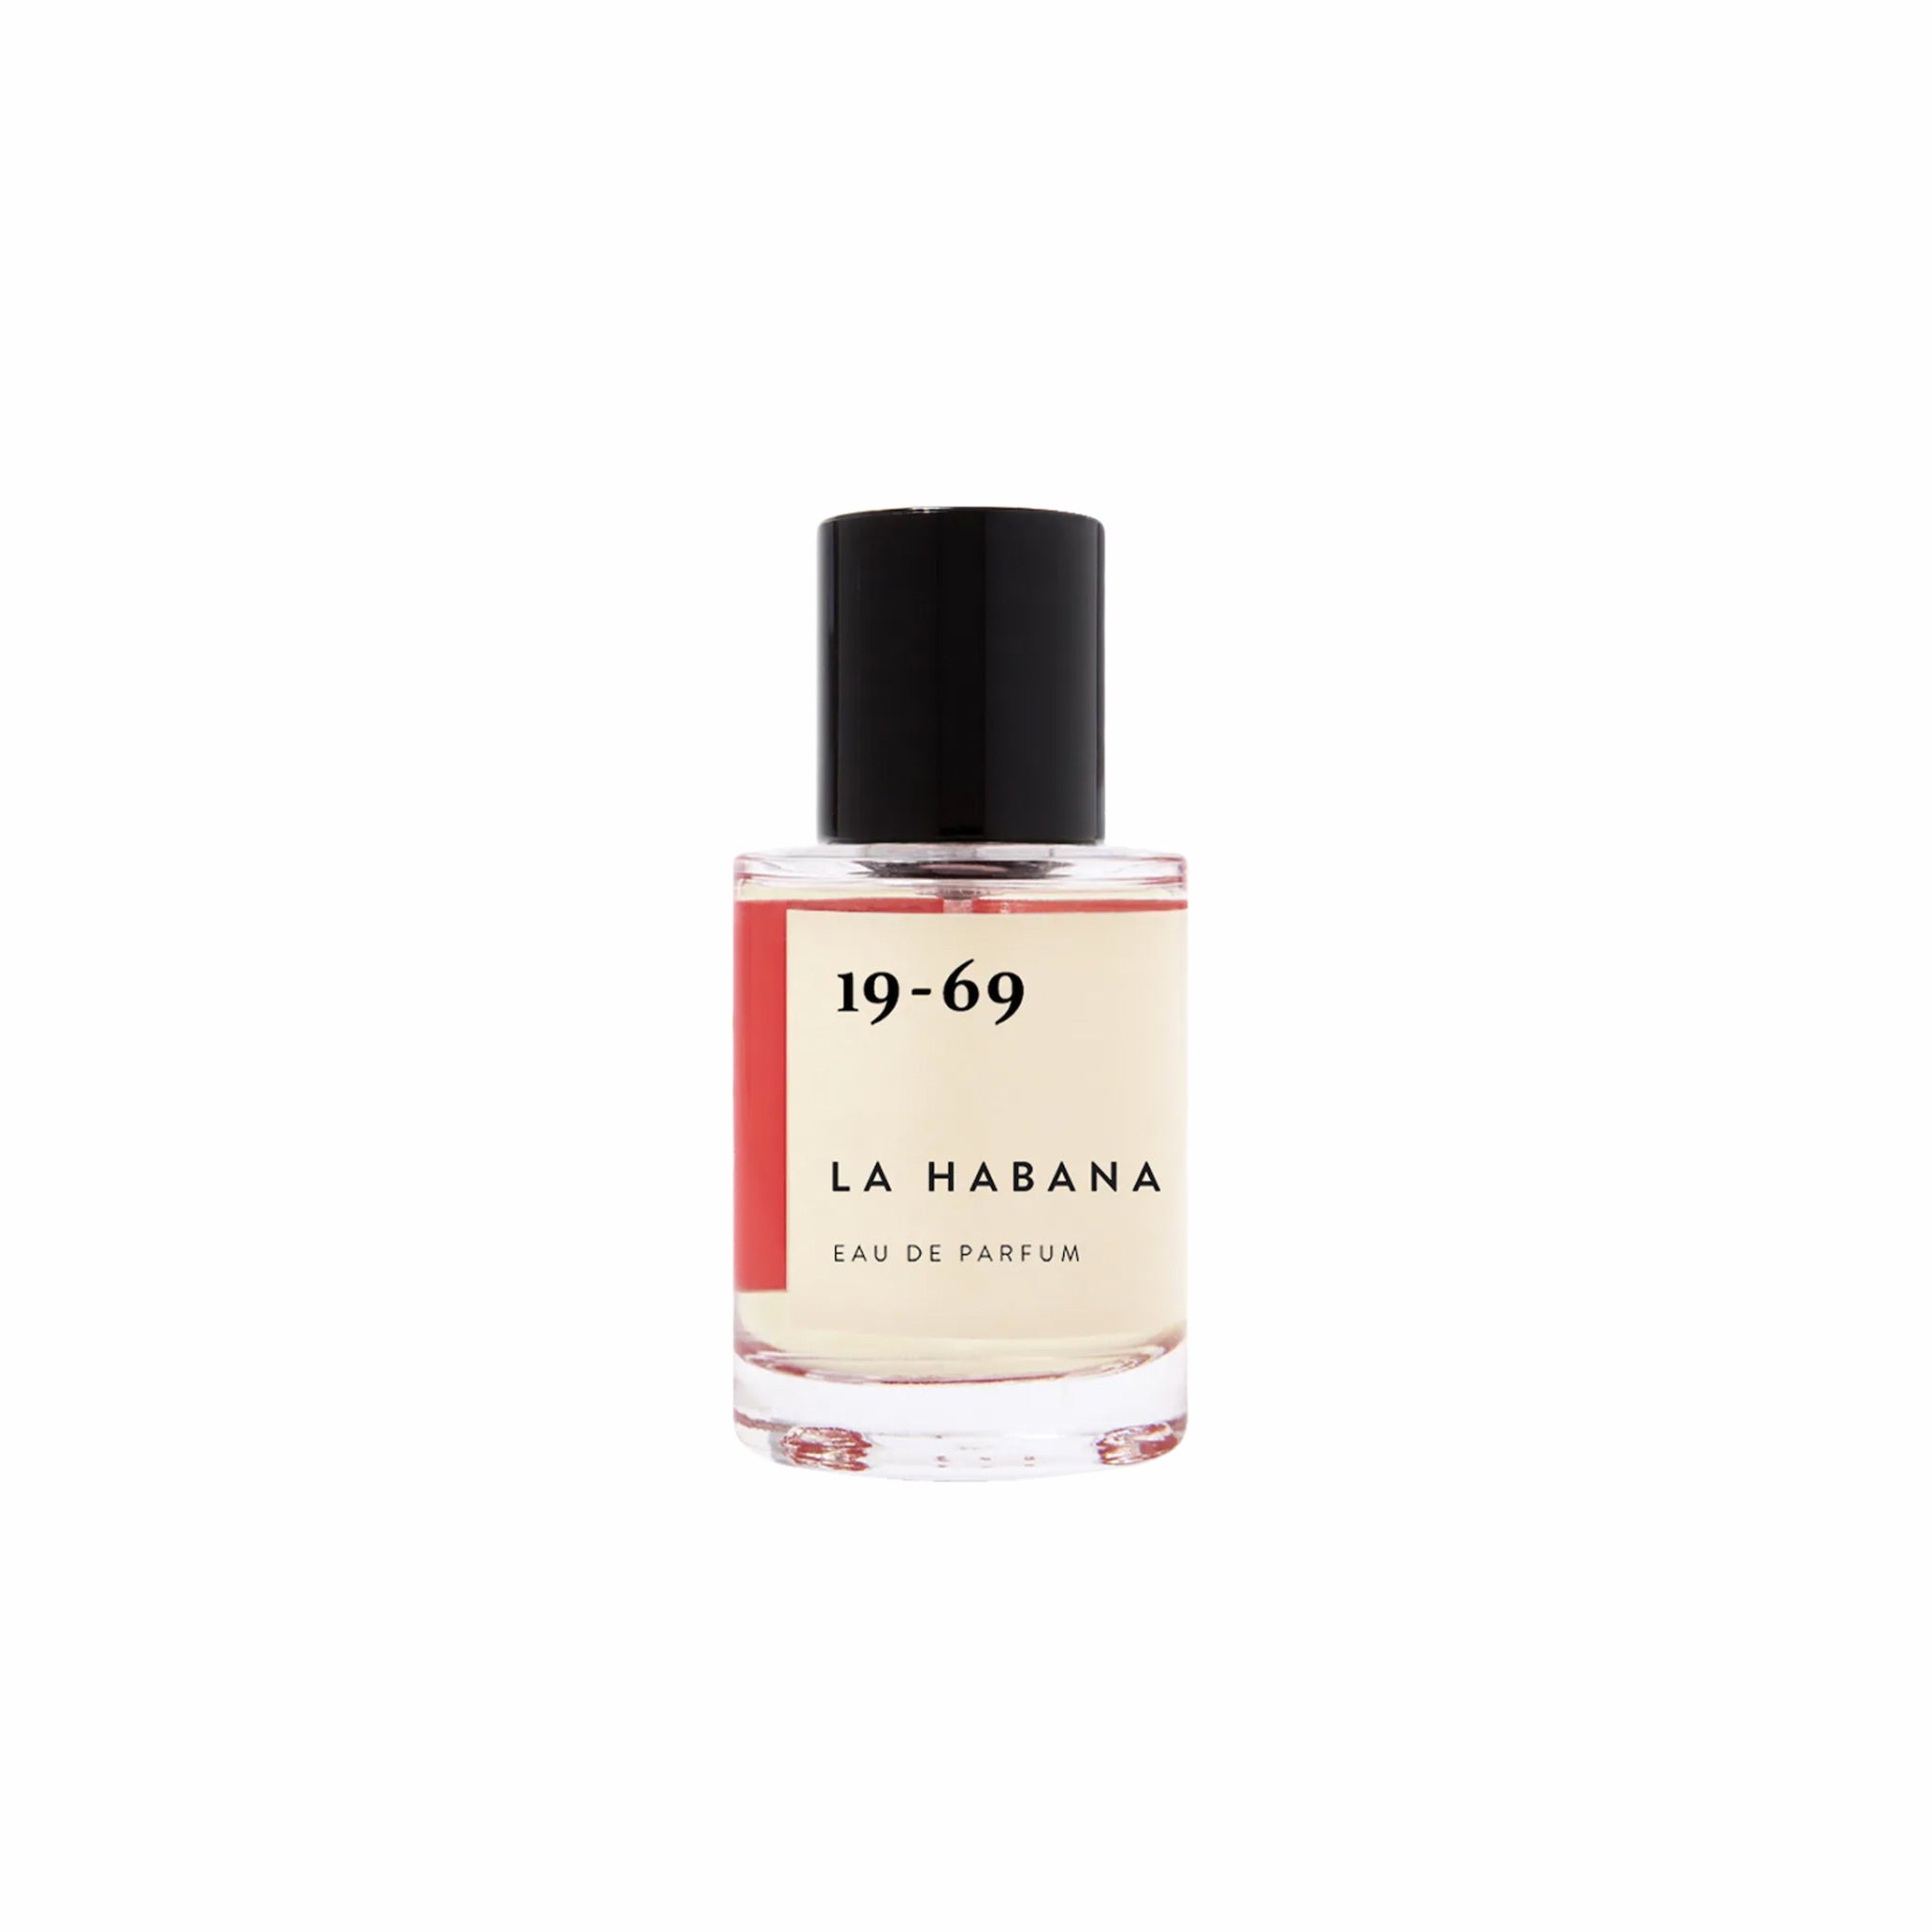 19-69, 19-69 La Habana Eau de Parfum (30mL)